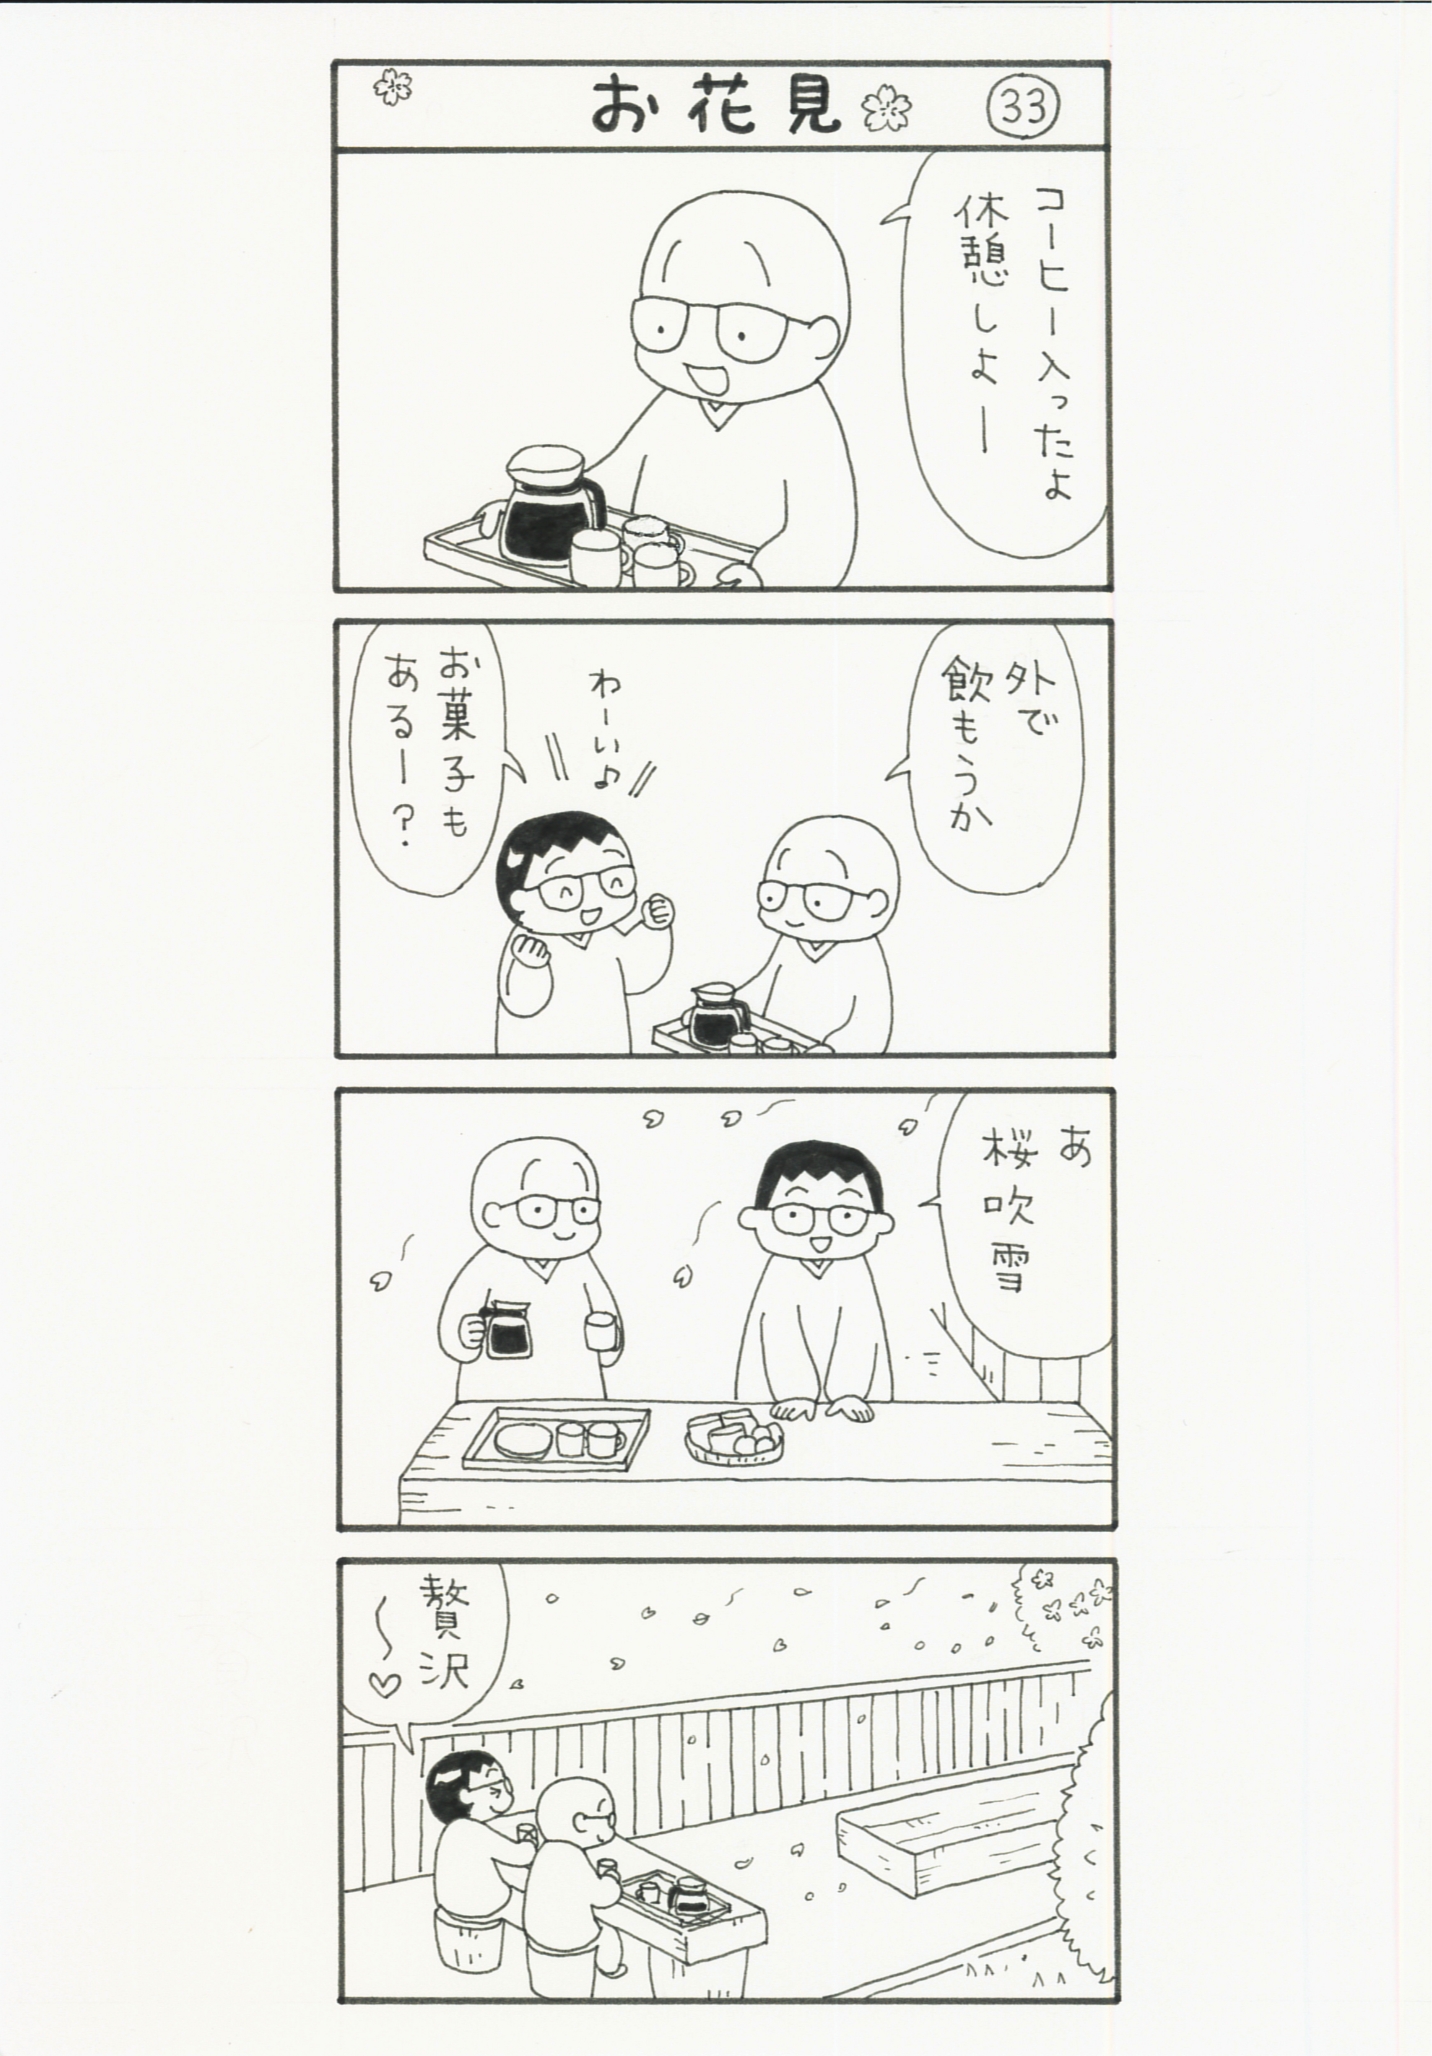 まっちゃん４コマ漫画33話